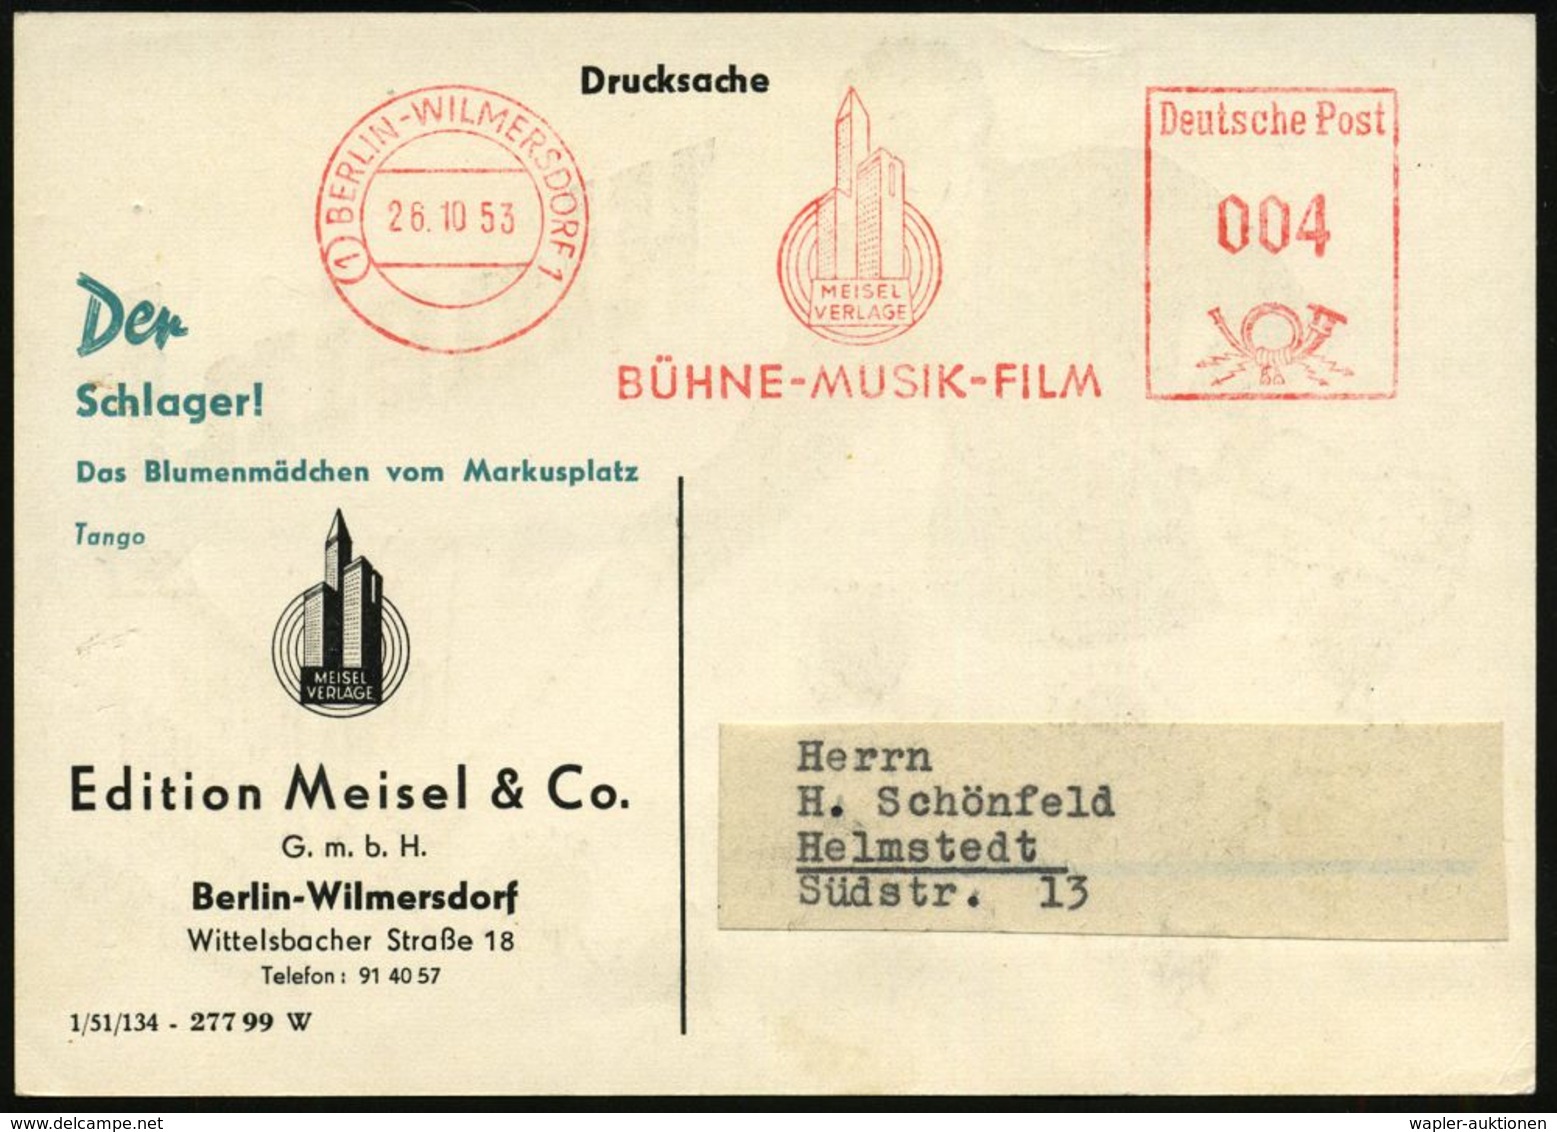 MUSIK-VERLAGE : (1) BERLIN-WILMERSDORF1/ MEISEL/ VERLAGE/ BÜHNE-MUSIK-FILM 1953 (26.10.) AFS (Logo: Hochhäuser, Schall-w - Musik